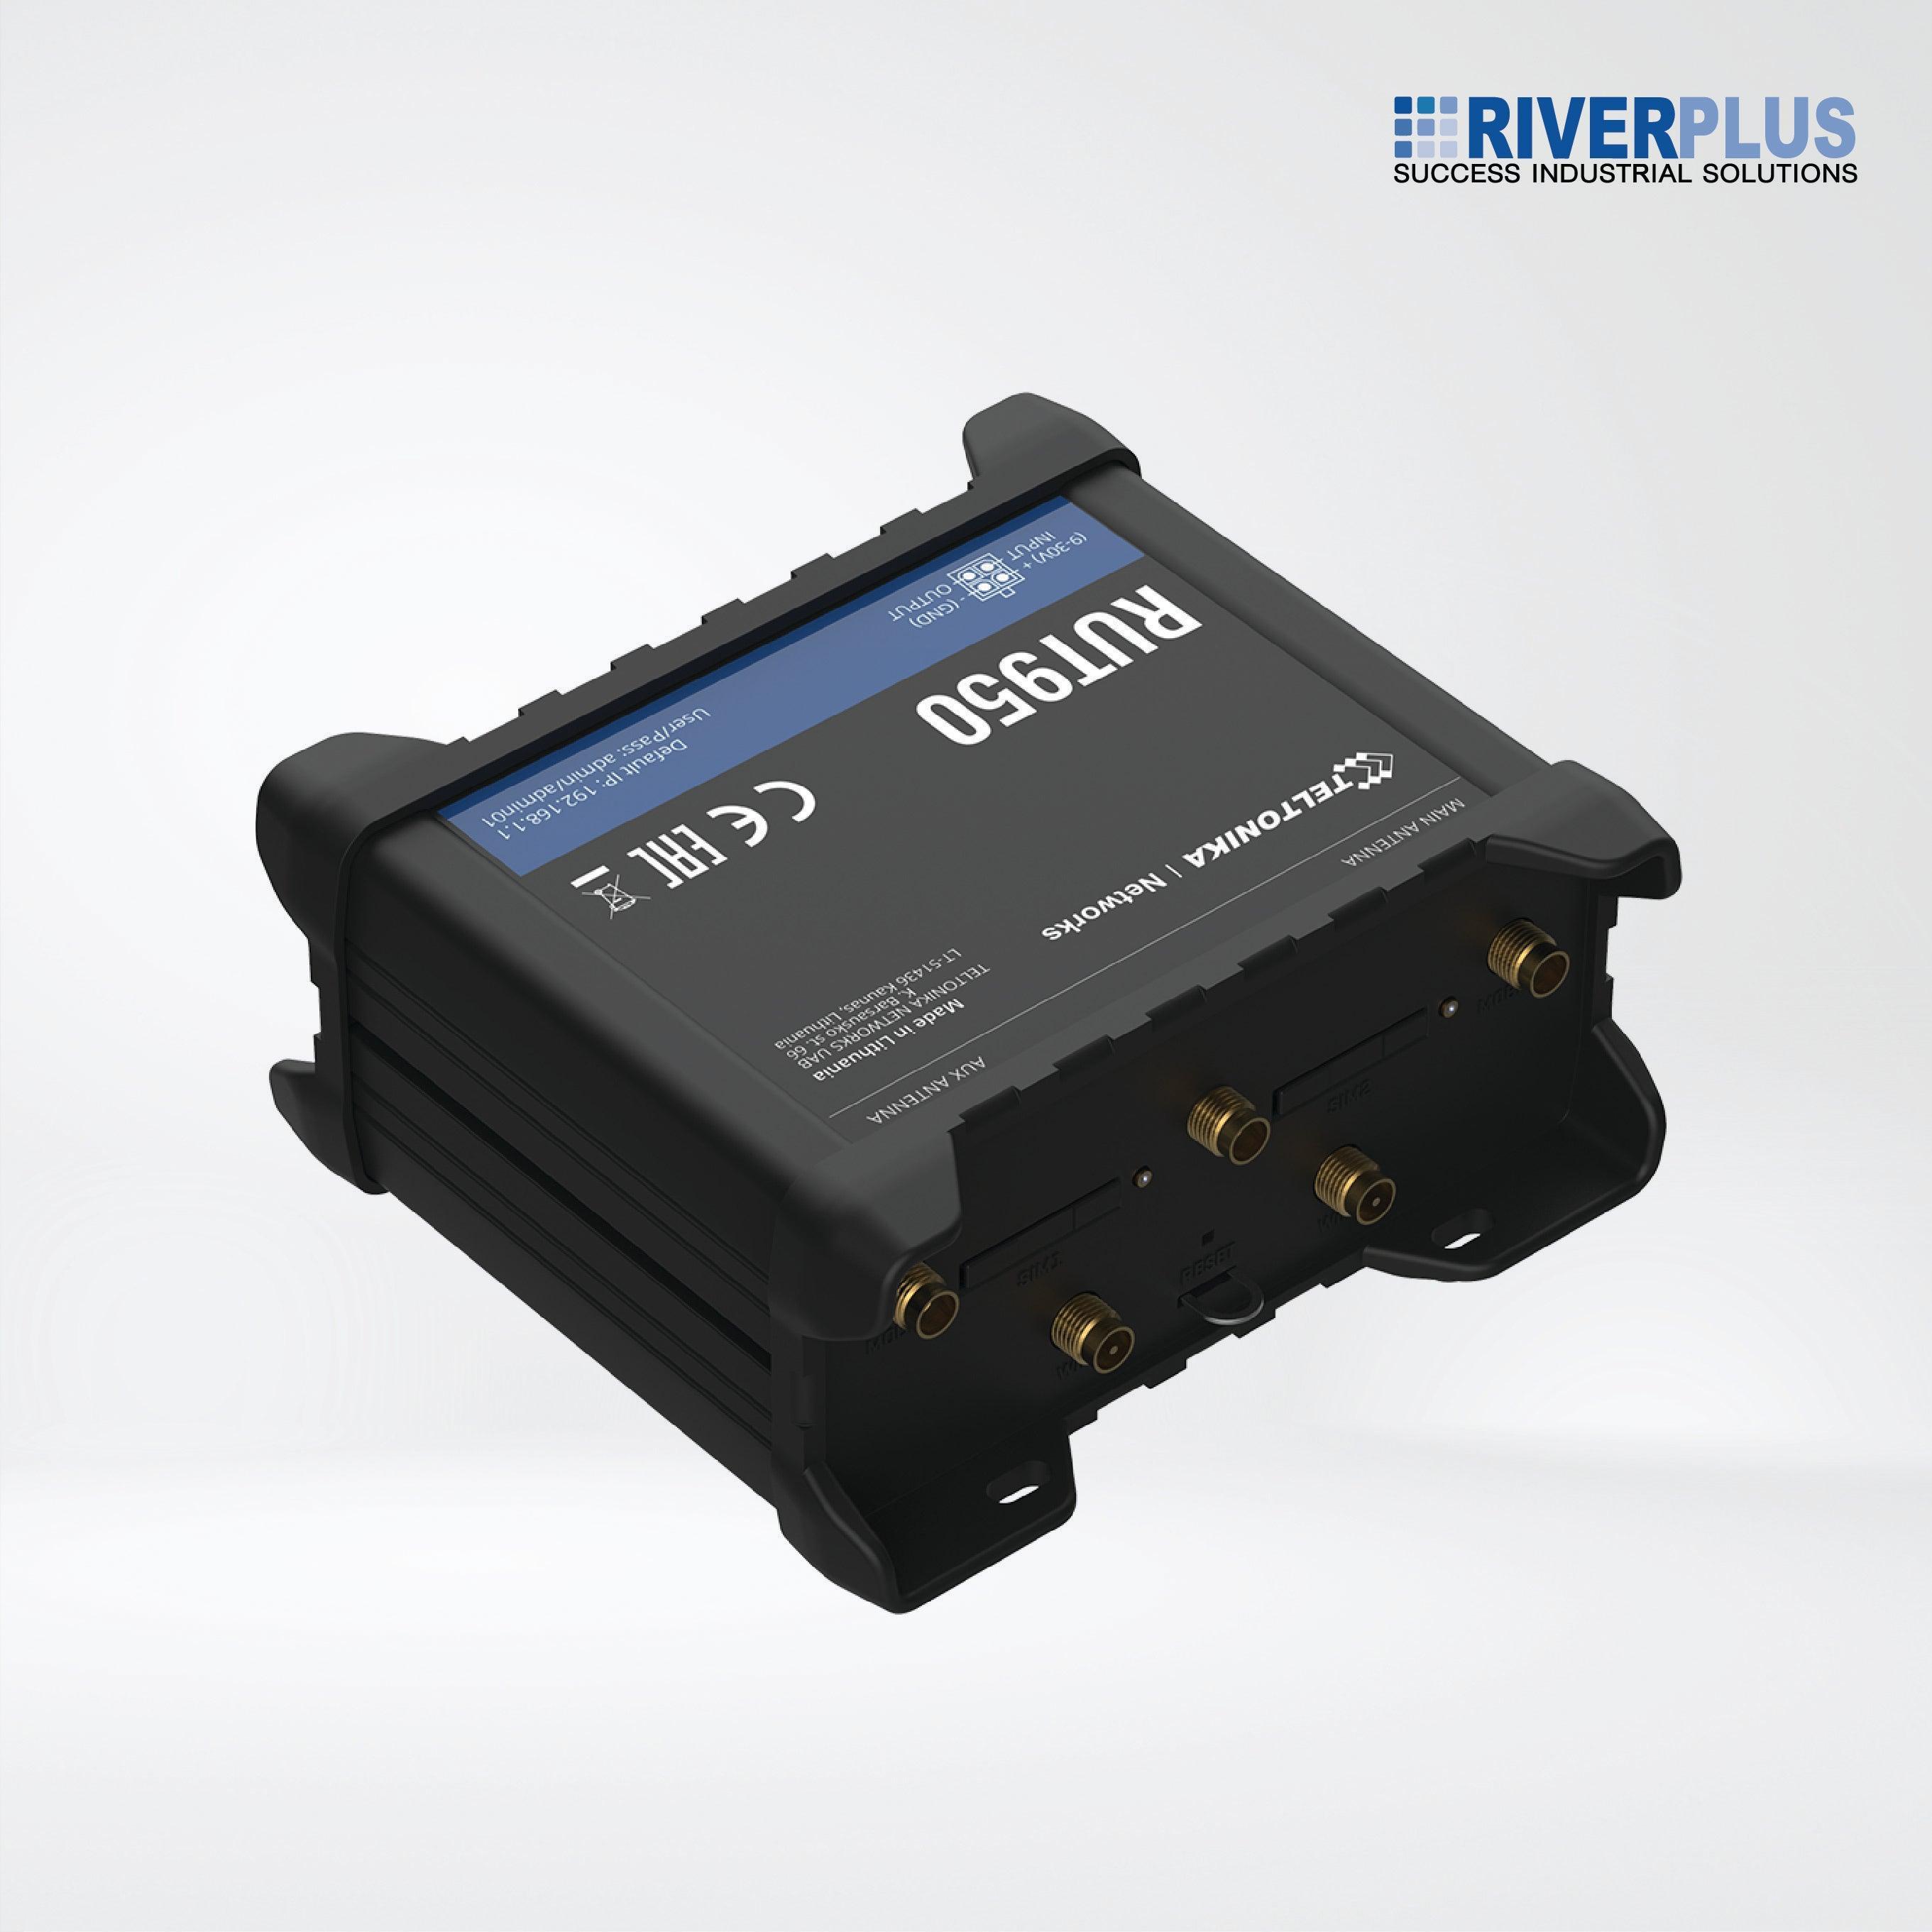 RUT950 Industrial 4G LTE/Wi-Fi/Dual-SIM - Riverplus